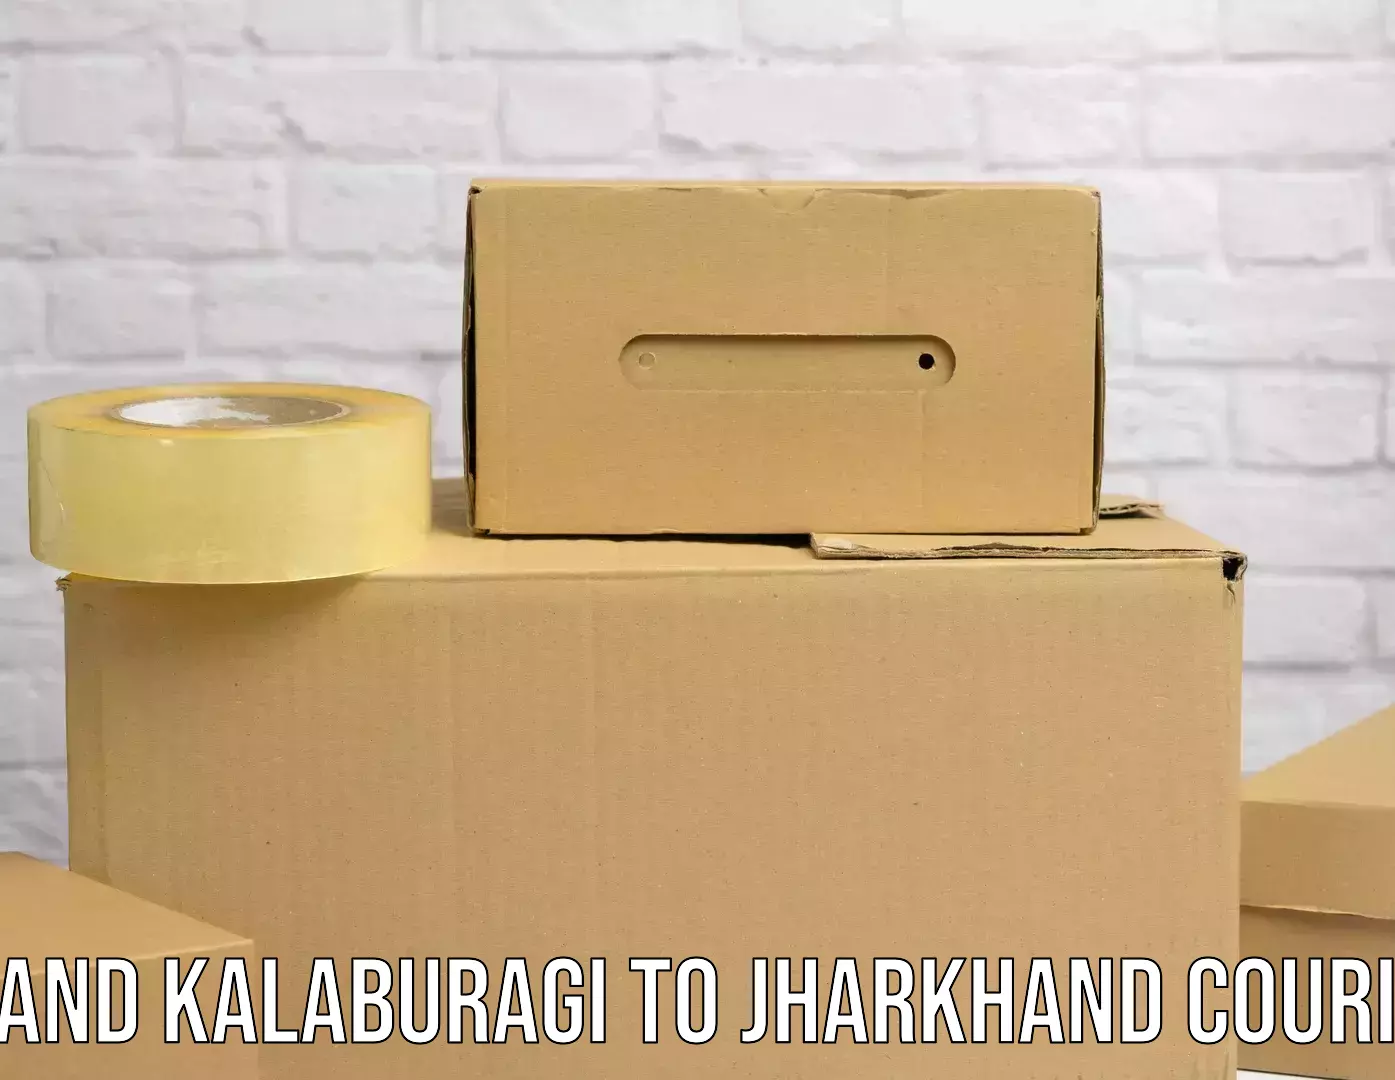 Global shipping networks Aland Kalaburagi to Jharkhand